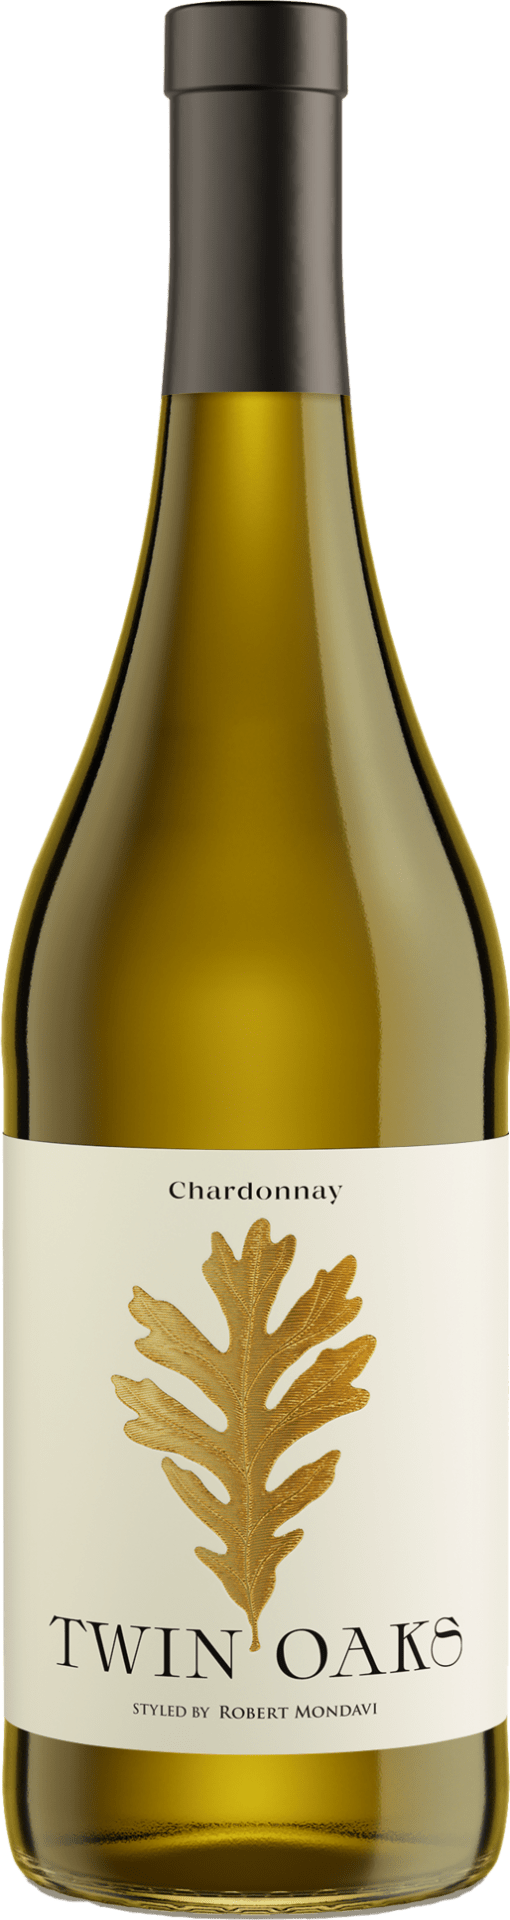 Twin Oaks Chardonnay